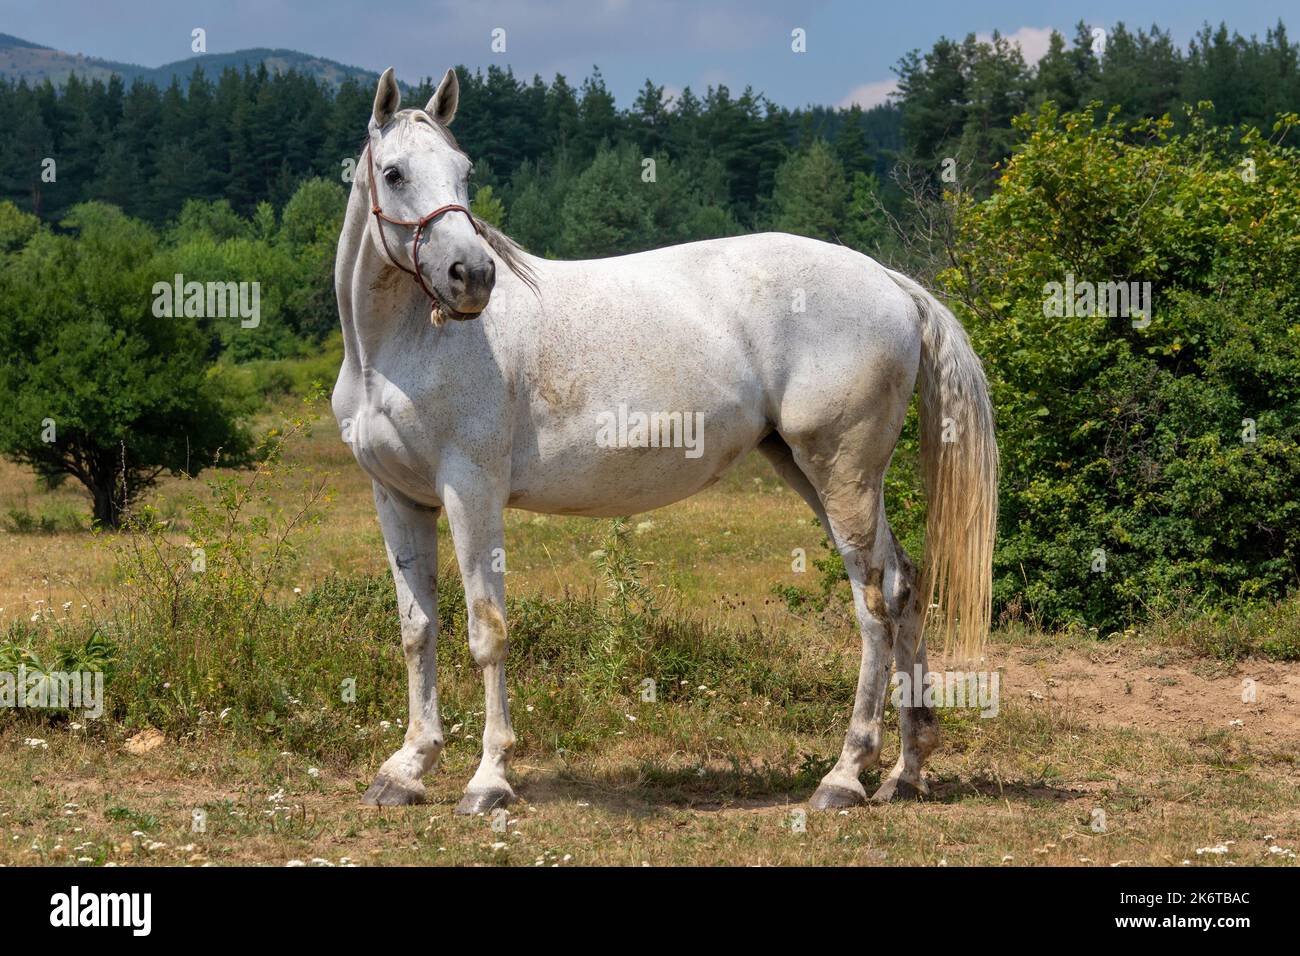 White horse on nature background Stock Photo